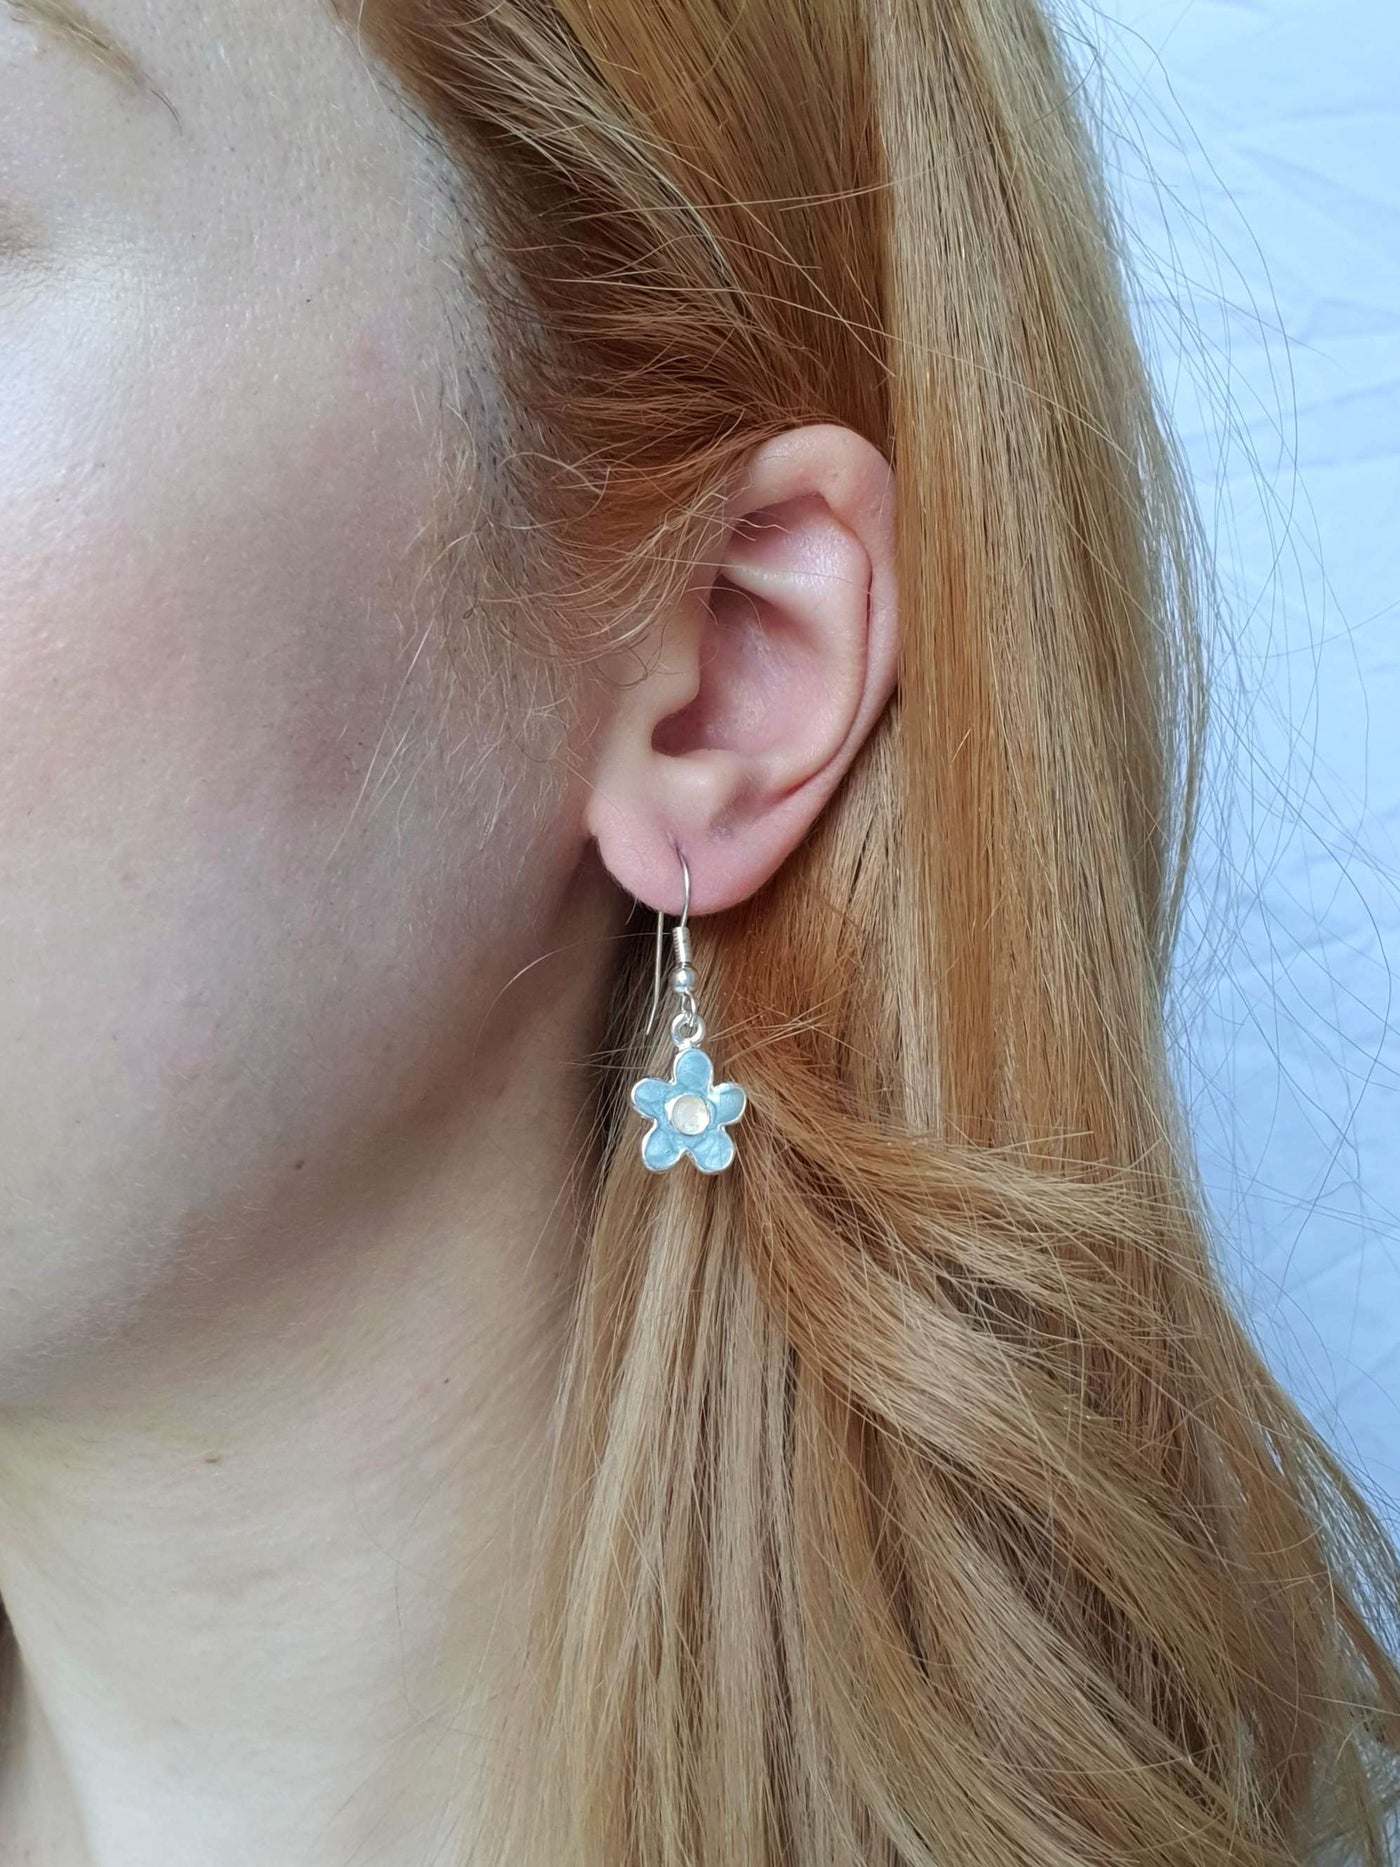 Vintage Silver Plated Blue Enamel Flower Drop Earrings